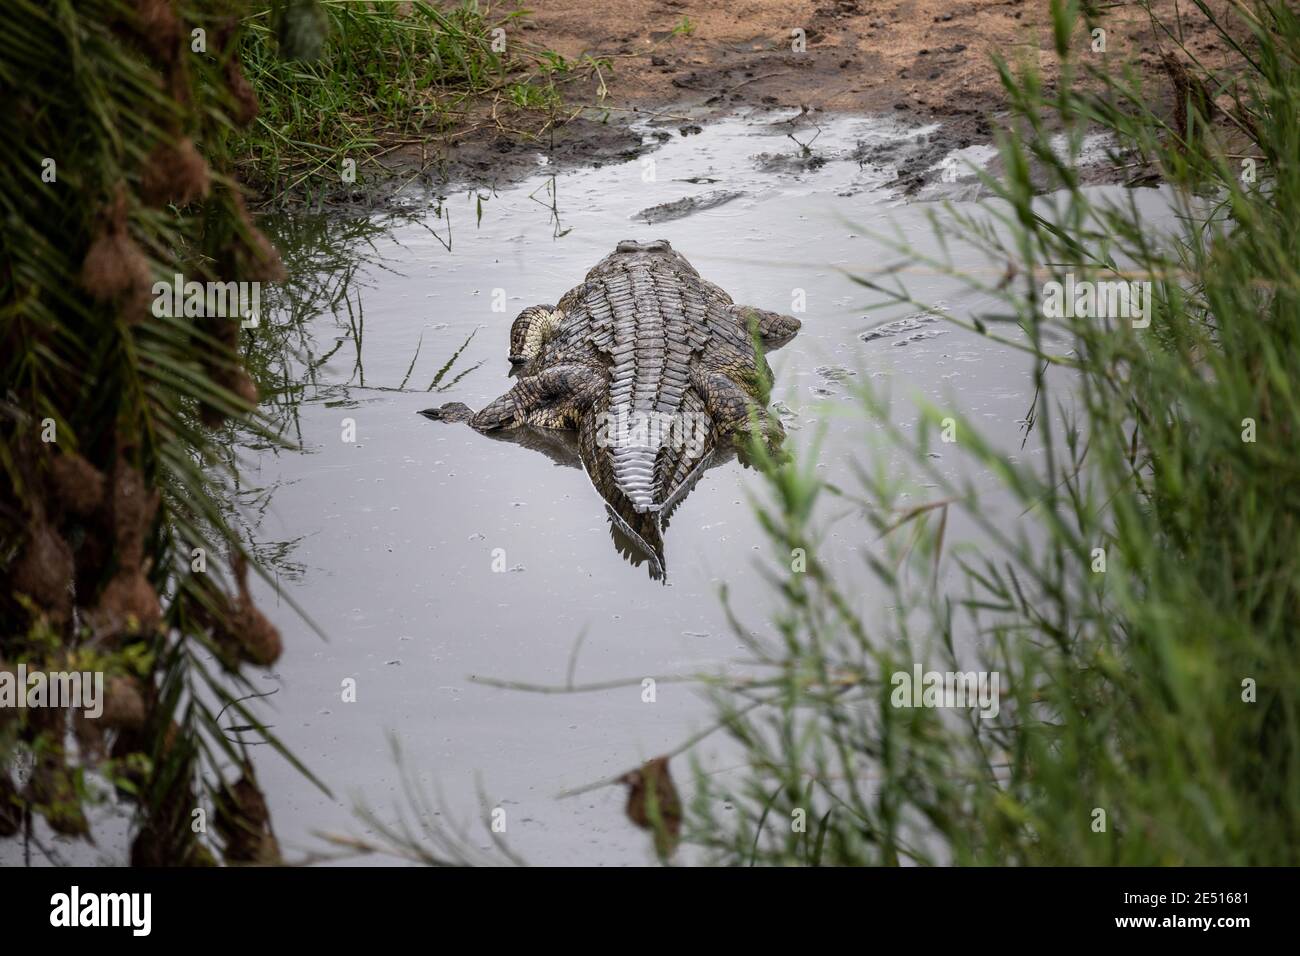 Un crocodile du nil se cache dans une piscine d'eau peu profonde dans un épaississement de canne Banque D'Images